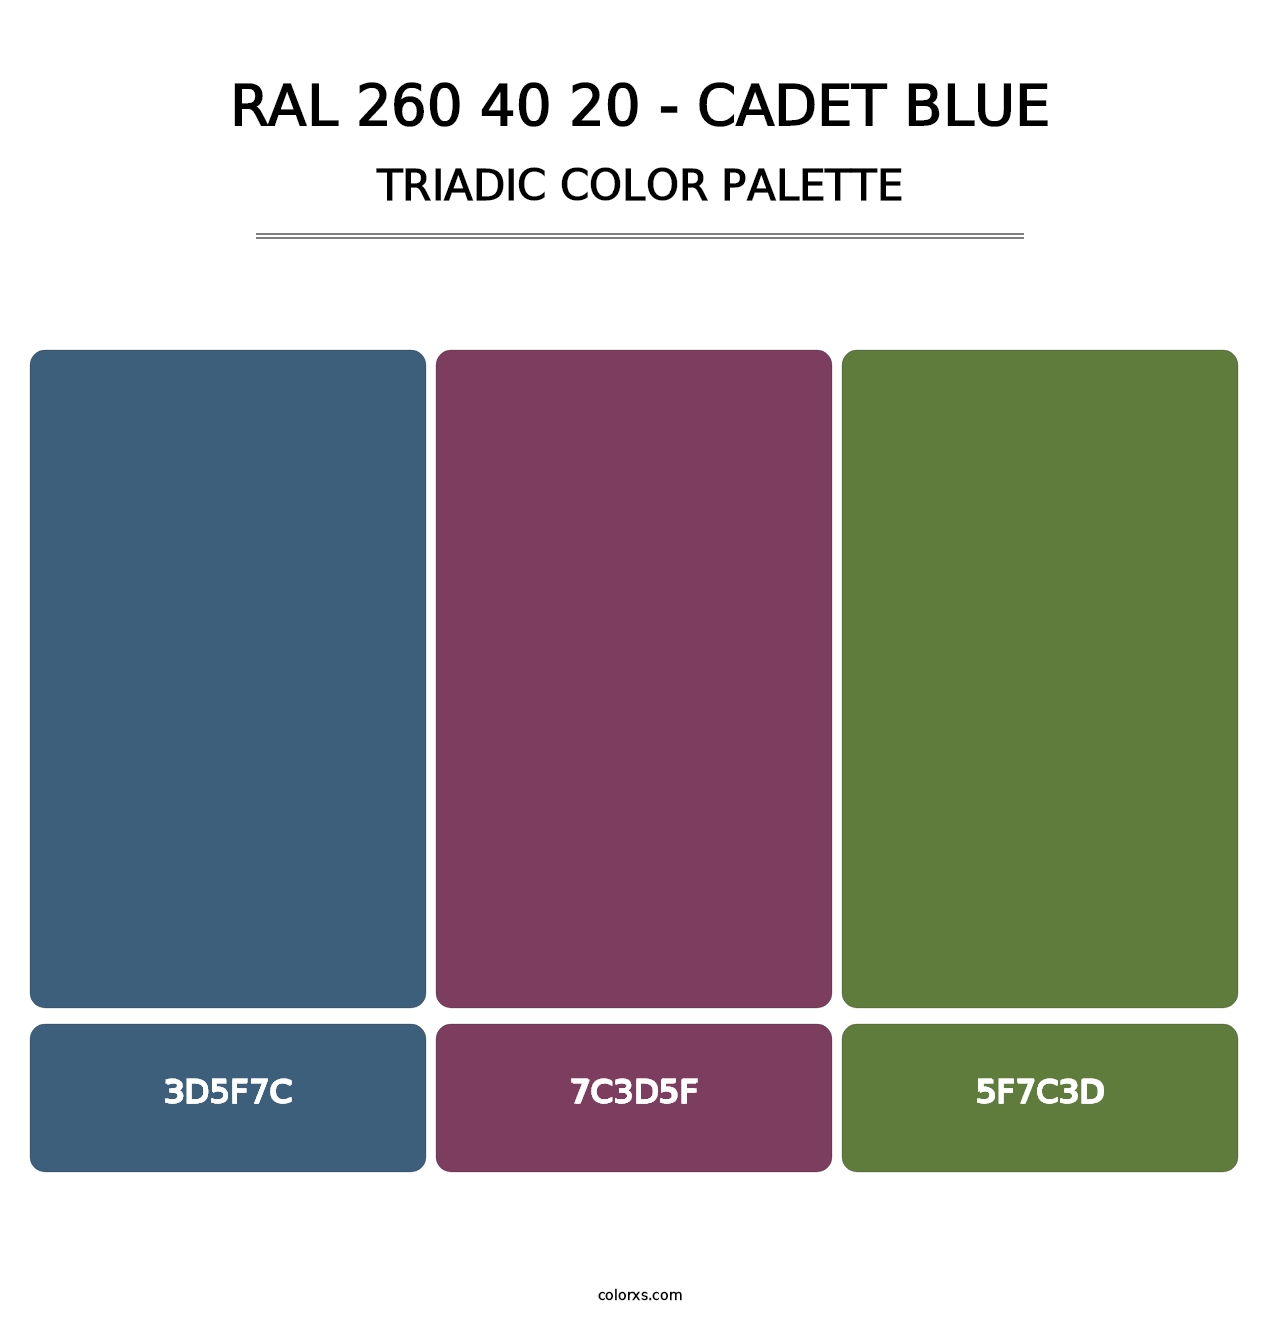 RAL 260 40 20 - Cadet Blue - Triadic Color Palette